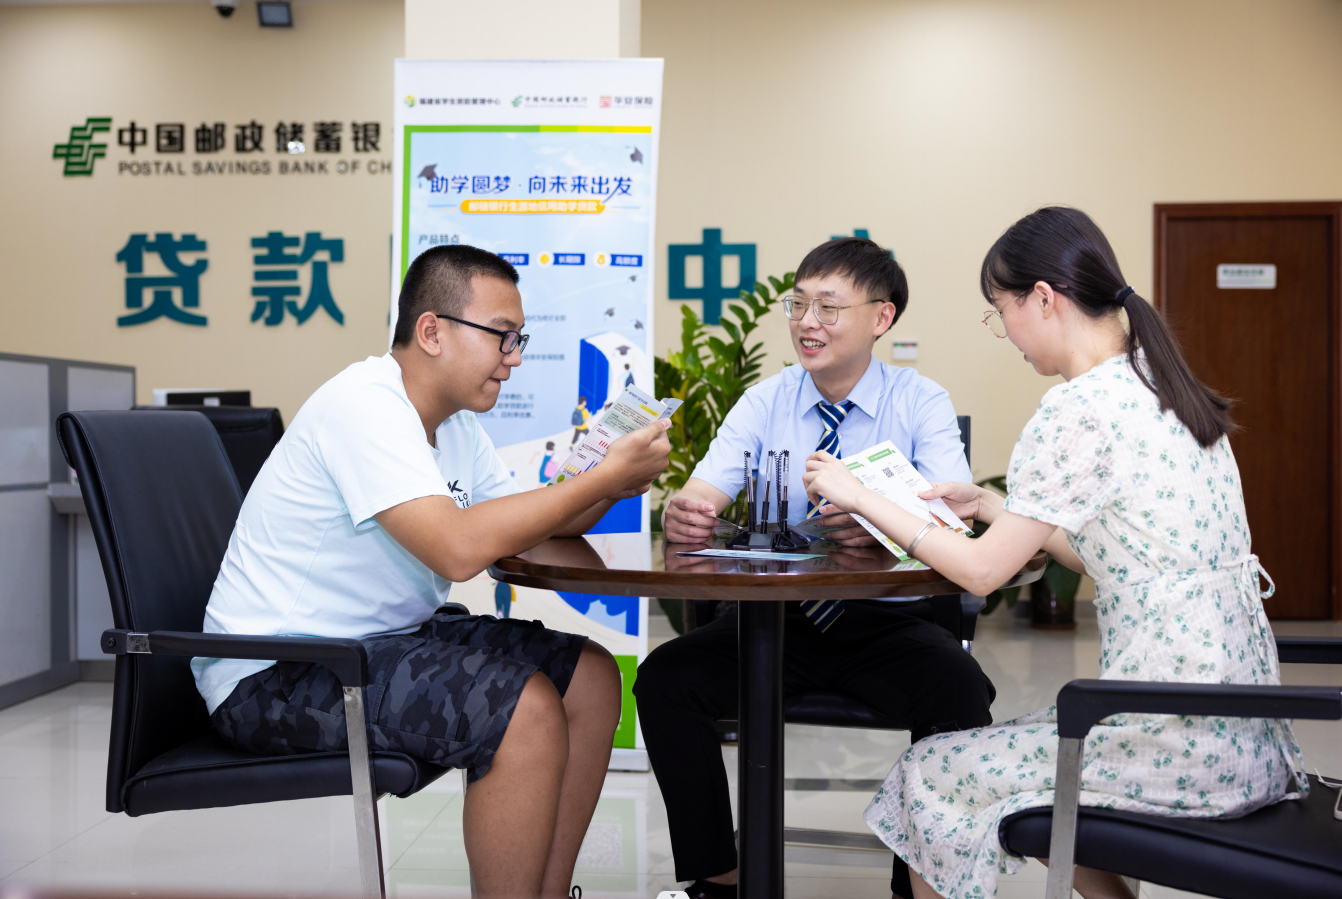 邮储银行福建省分行 支持超4万名家庭经济困难学生圆梦大学